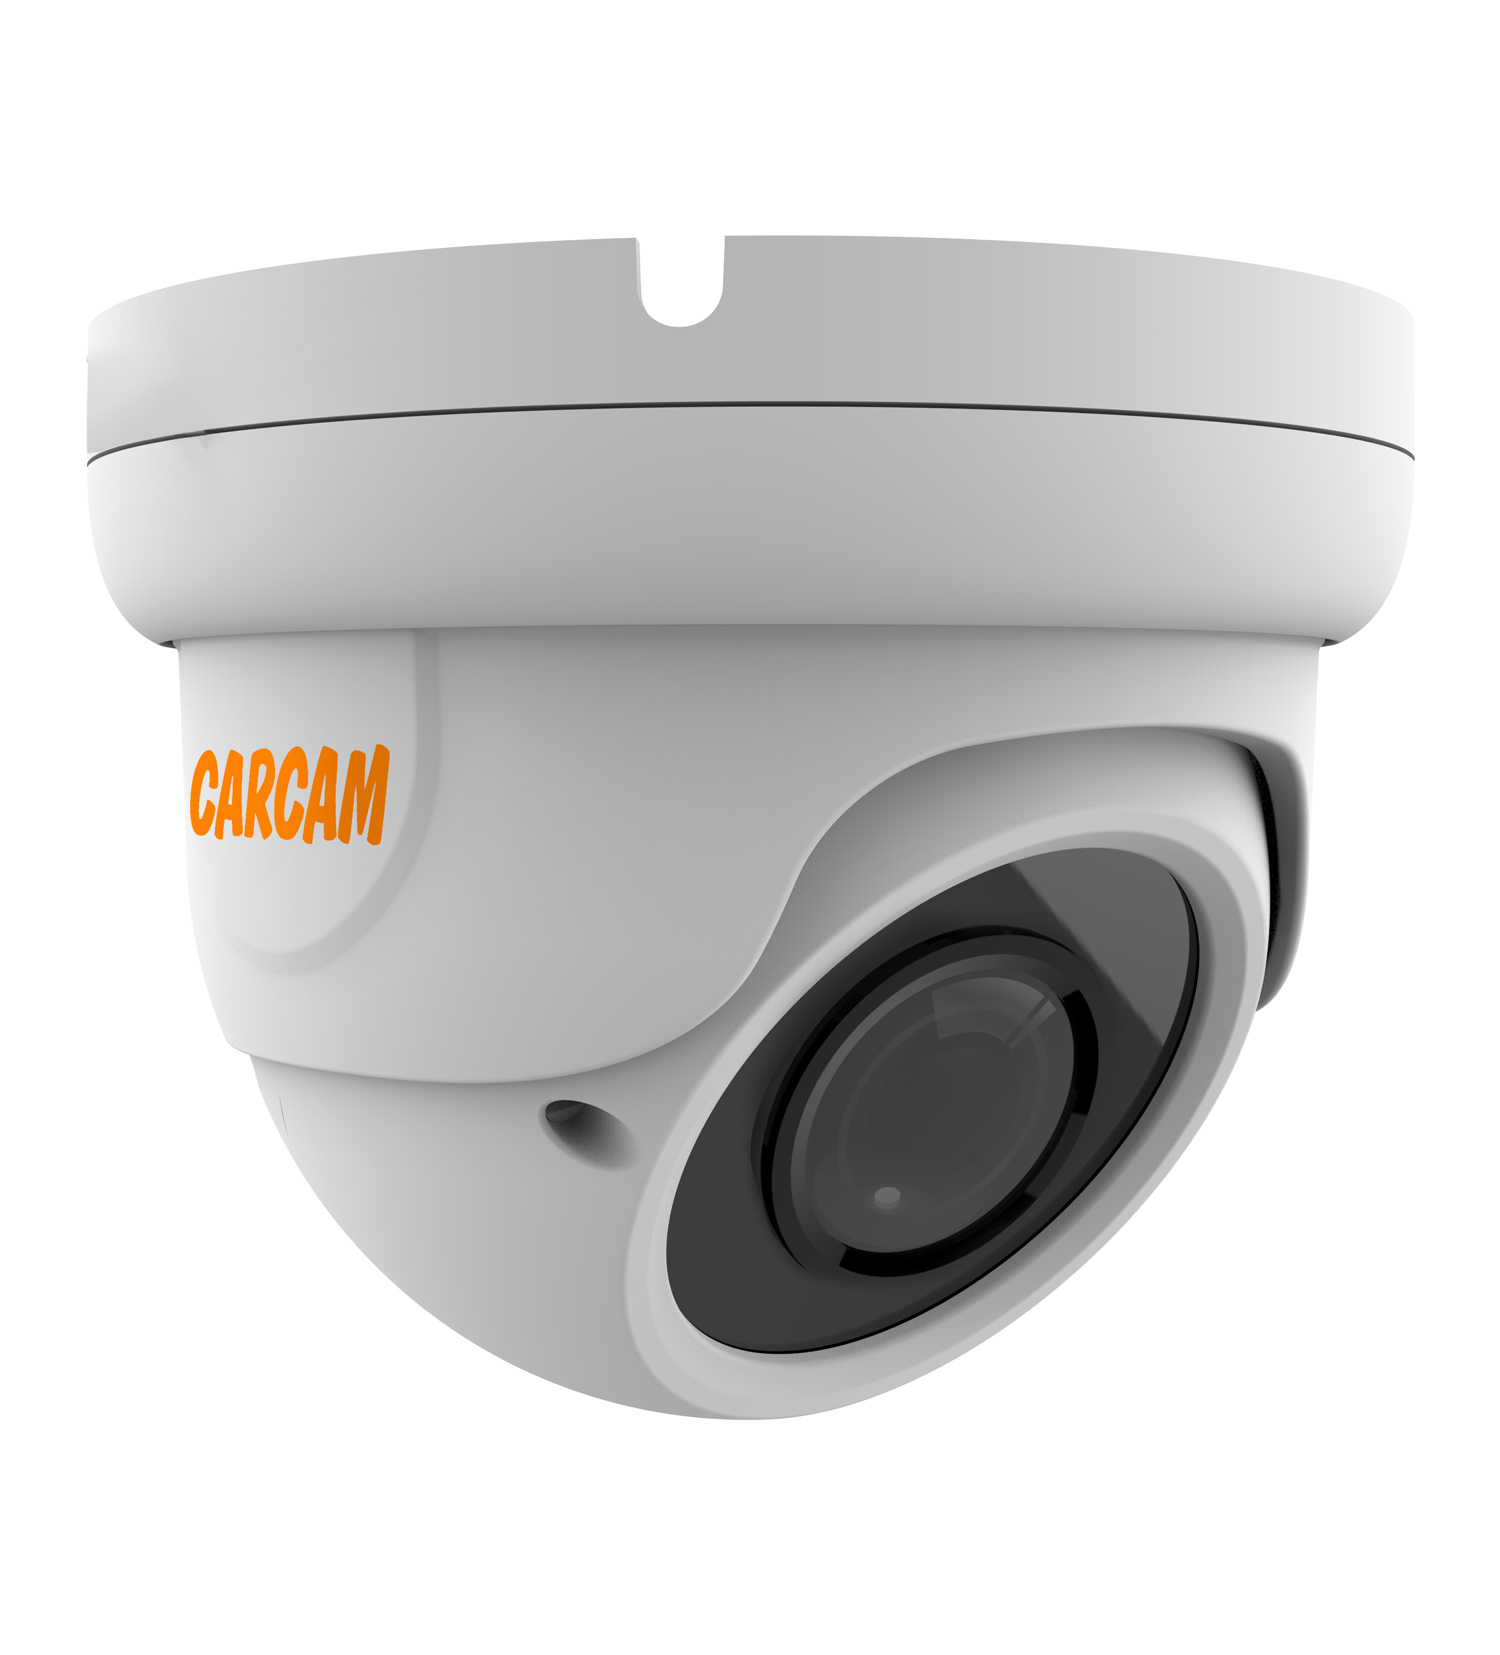 Купольная IP-камера CARCAM 2MP Dome IP Camera 2074 (2.8-12mm) купольная full hd ip камера с poe микрофоном и ик подсветкой 25 м carcam 2mp dome ip camera 2071m